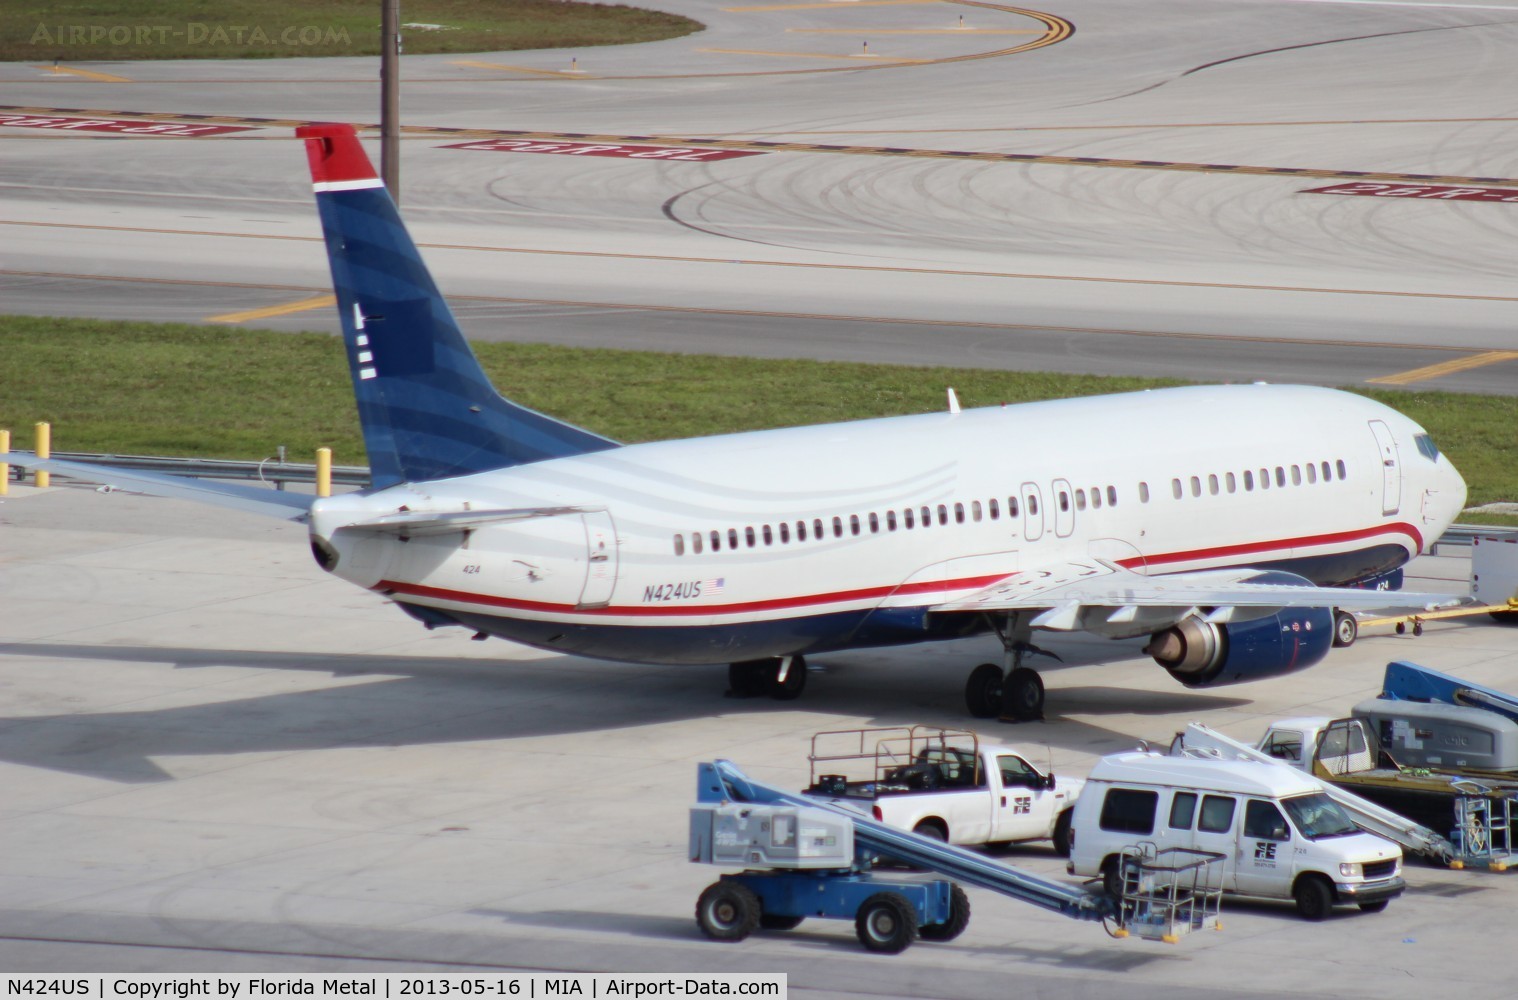 N424US, 1989 Boeing 737-401 C/N 23991, US Airways 737-400